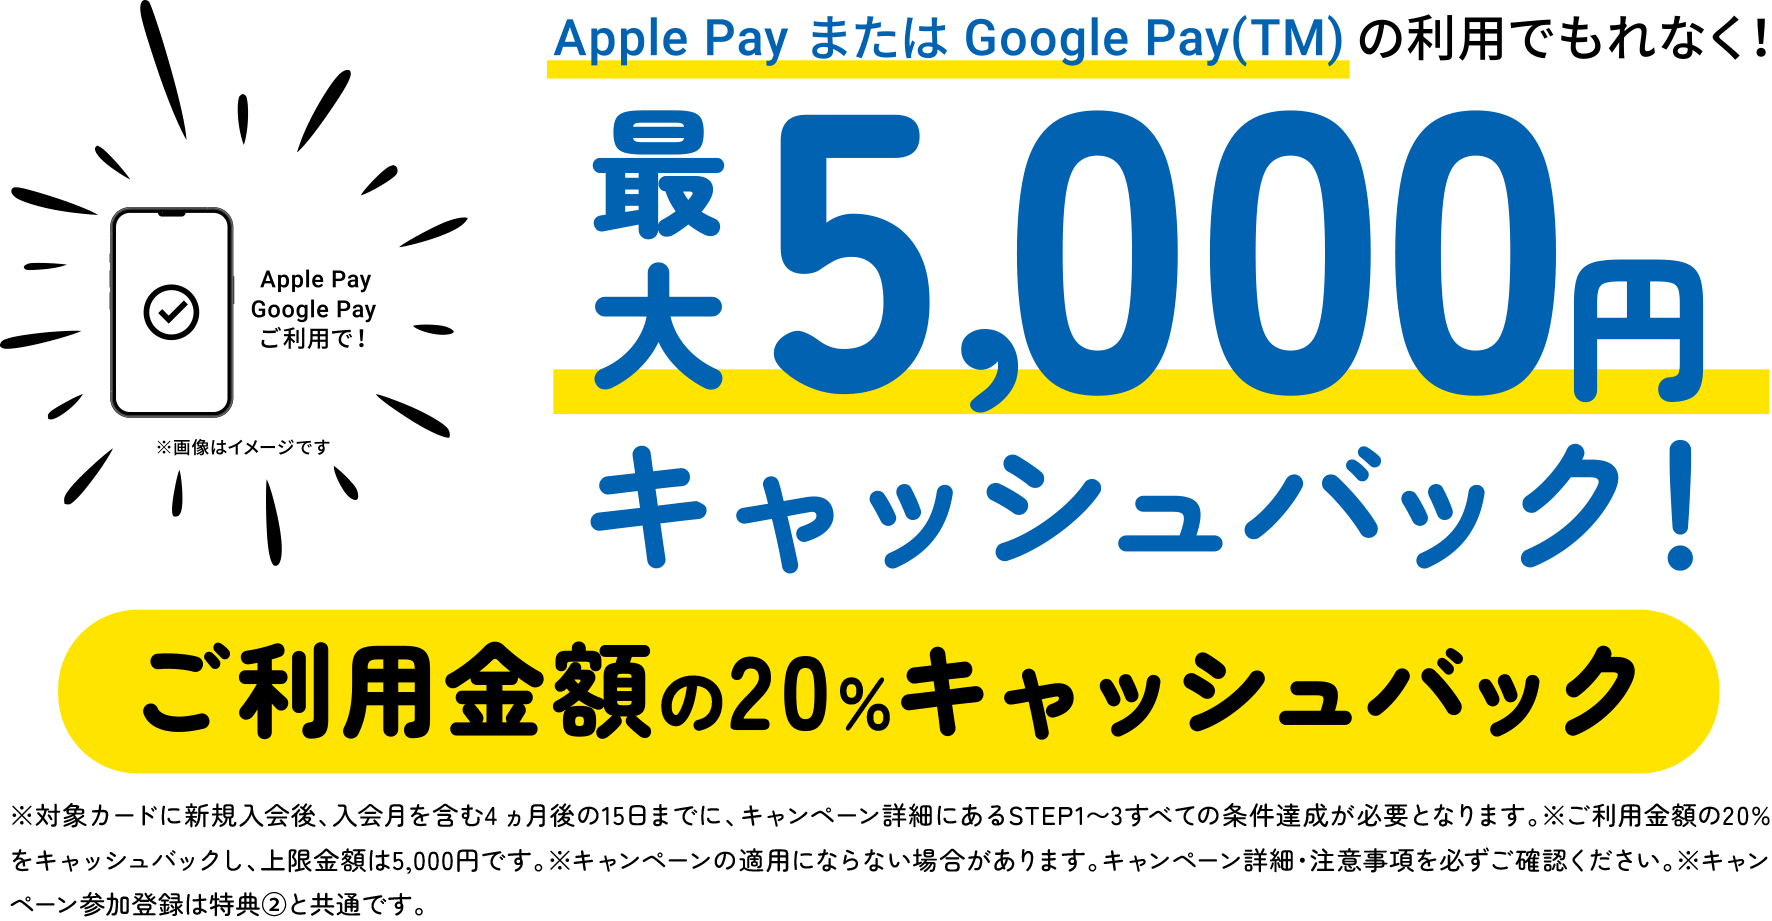 Apple PayまたはGoogle Pay(TM)の利用でもれなく！最大5,000円キャッシュバック！ご利用金額の20％キャッシュバック　※対象カードに新規入会後、入会月を含む4 ヵ月後の15日までに、キャンペーン詳細にあるSTEP1〜3すべての条件達成が必要となります。※ご利用金額の20%をキャッシュバックし、上限金額は5,000円です。※キャンペーンの適用にならない場合があります。キャンペーン詳細・注意事項を必ずご確認ください。※キャンペーン参加登録は特典②と共通です。